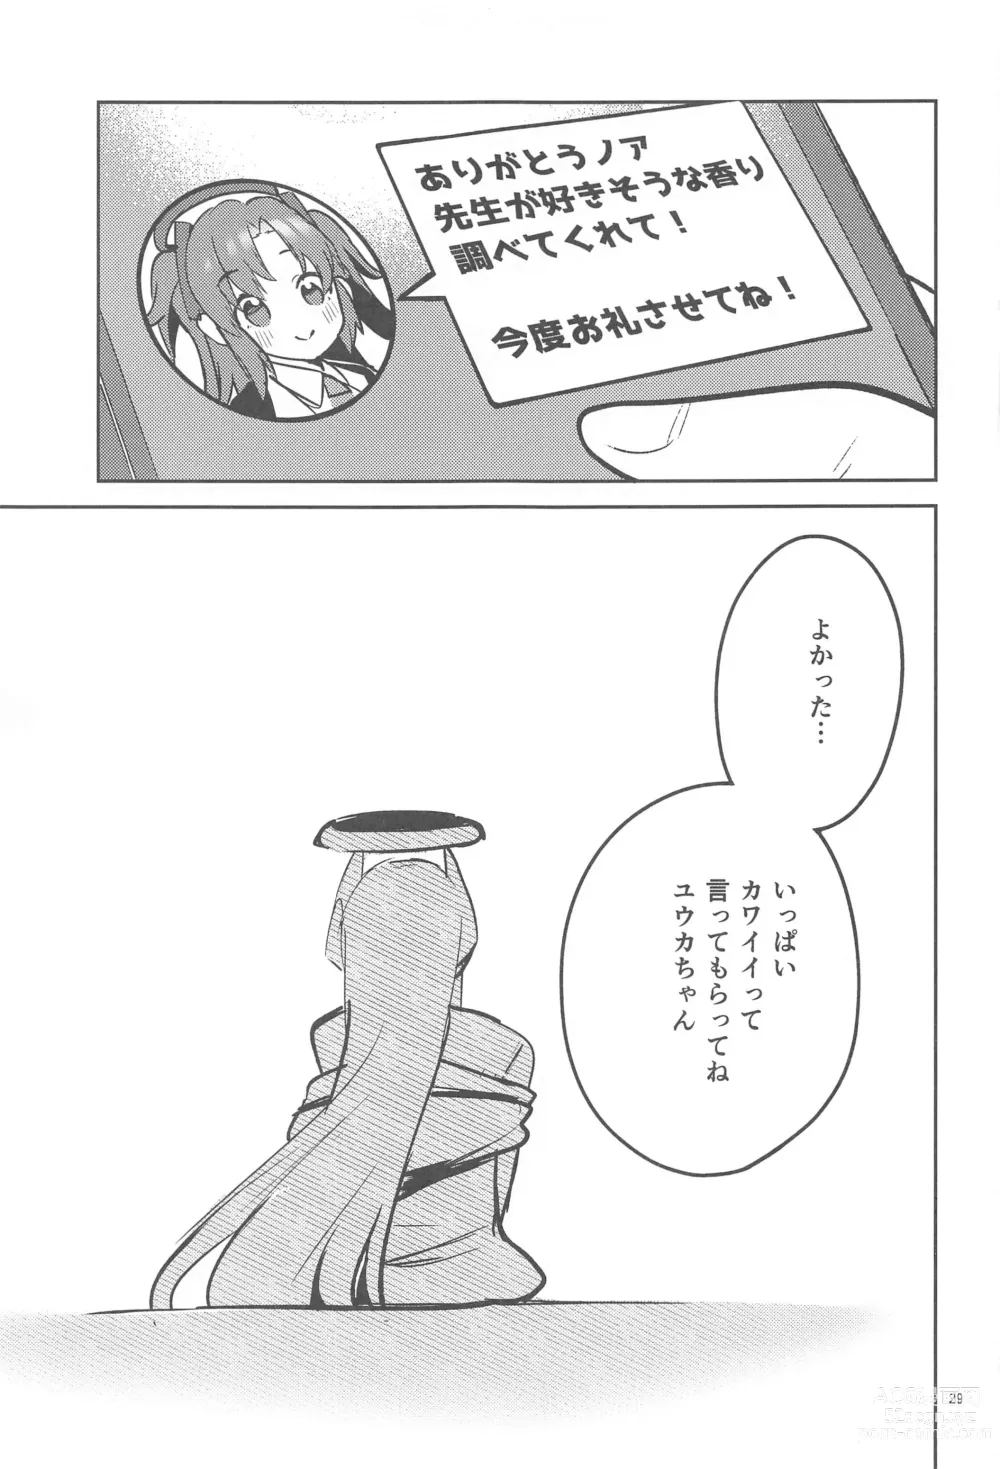 Page 28 of doujinshi Suki o Kazoeru Seito